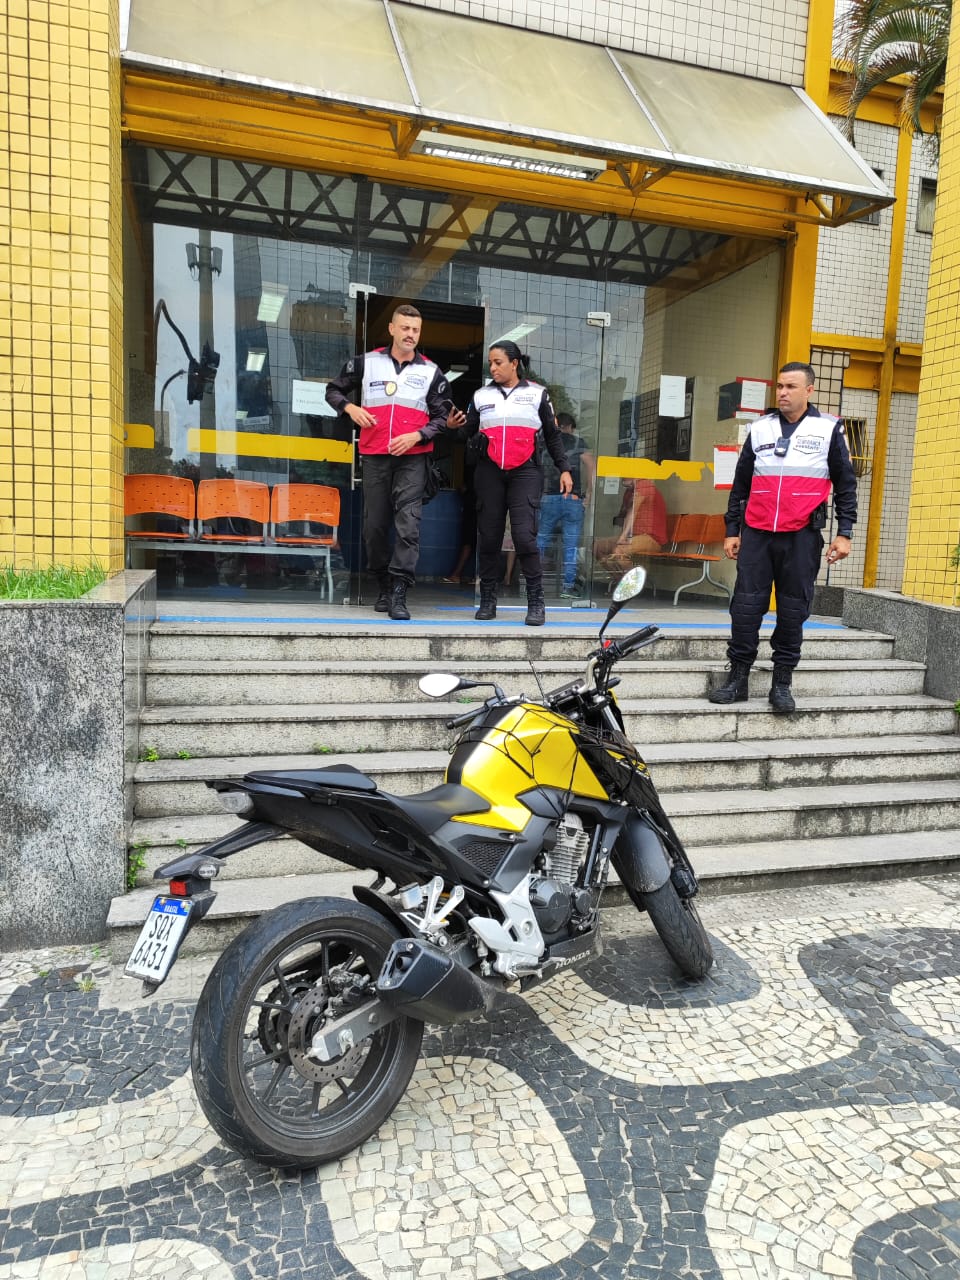 Dupla é presa com moto clonada após perseguição na Avenida Presidente Vargas (Foto: Divulgação)